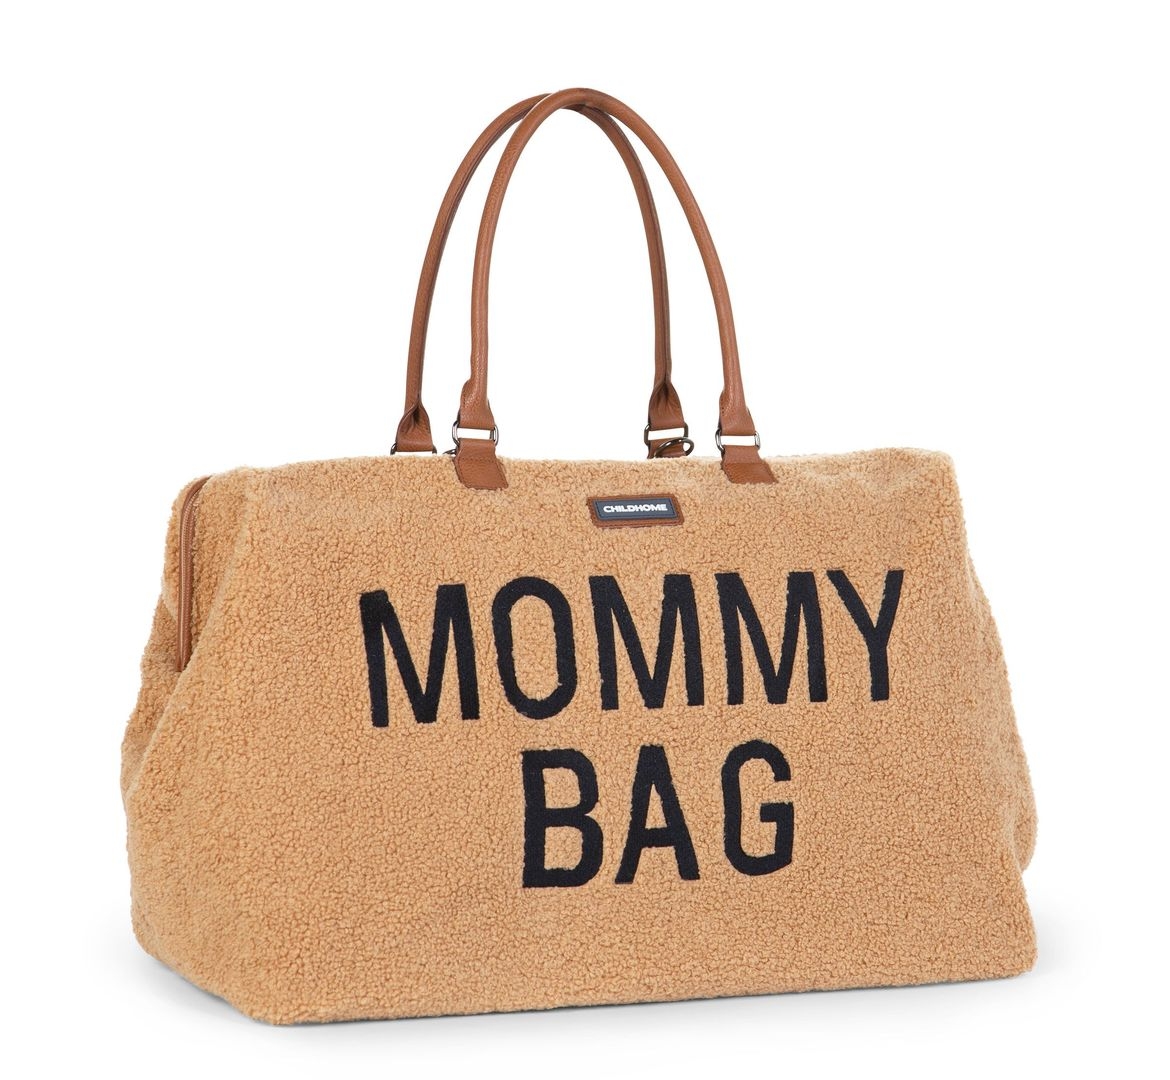 Mommy Bag Teddy Braun 9